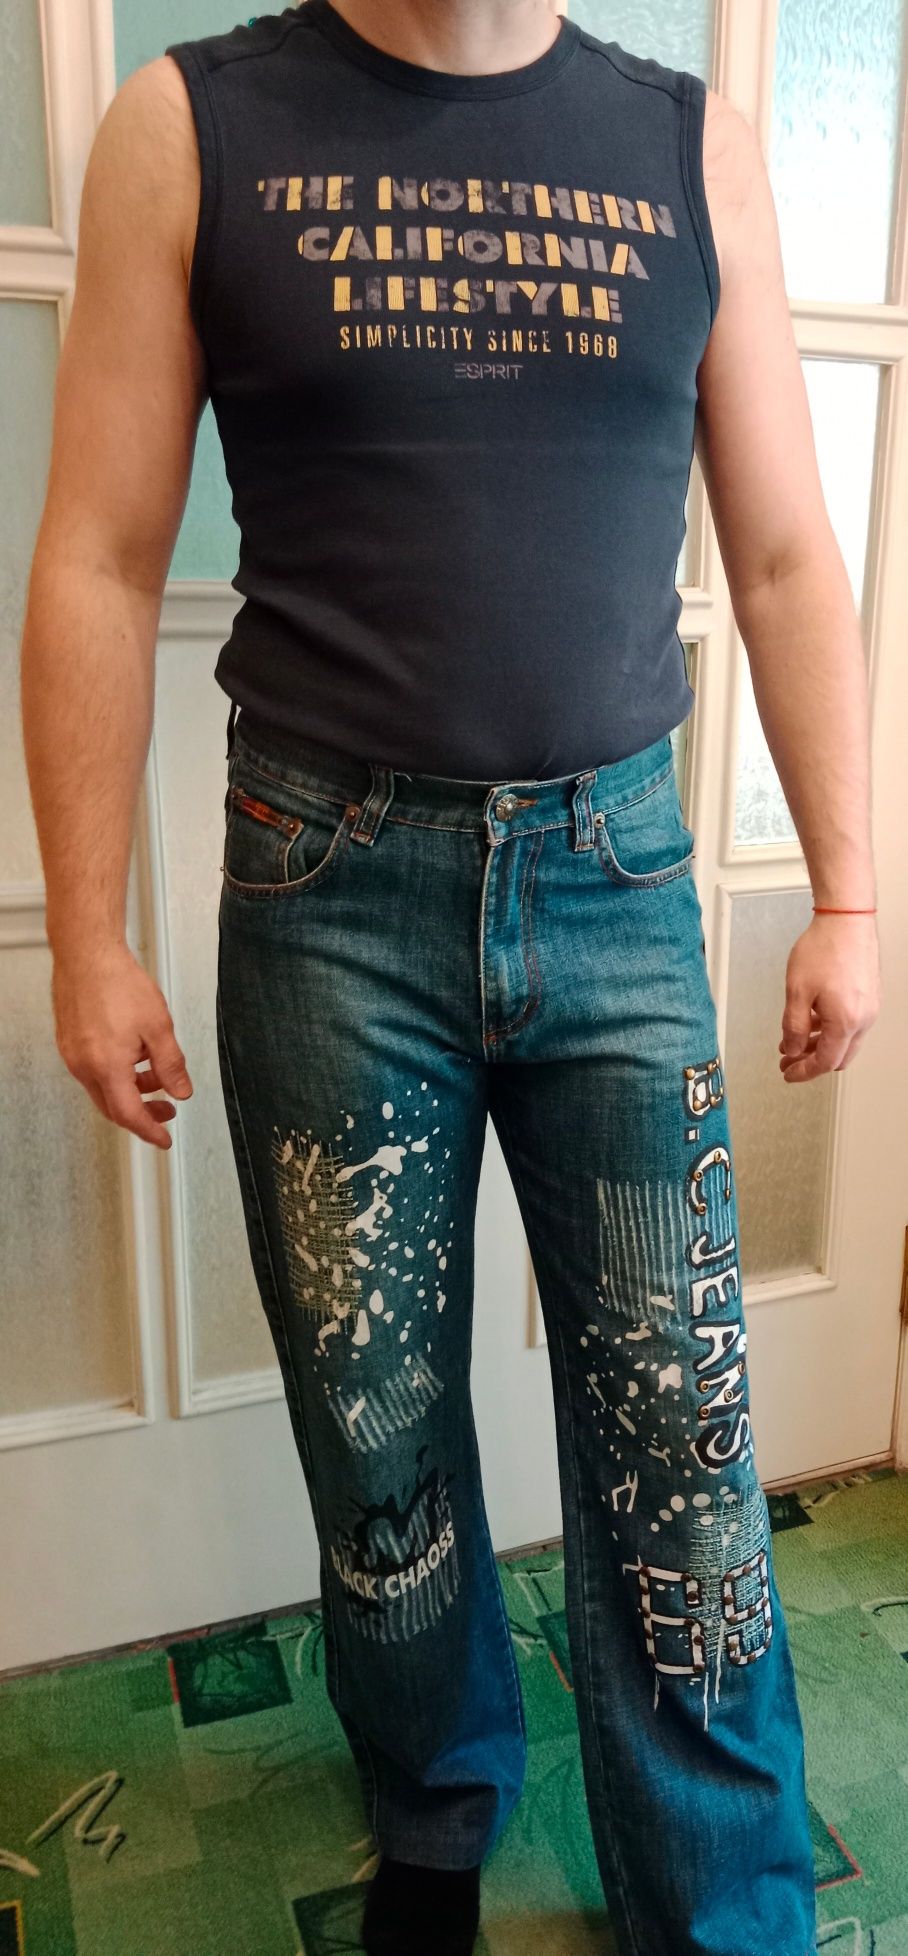 Костюм піджак джинсовий стильний з надписами